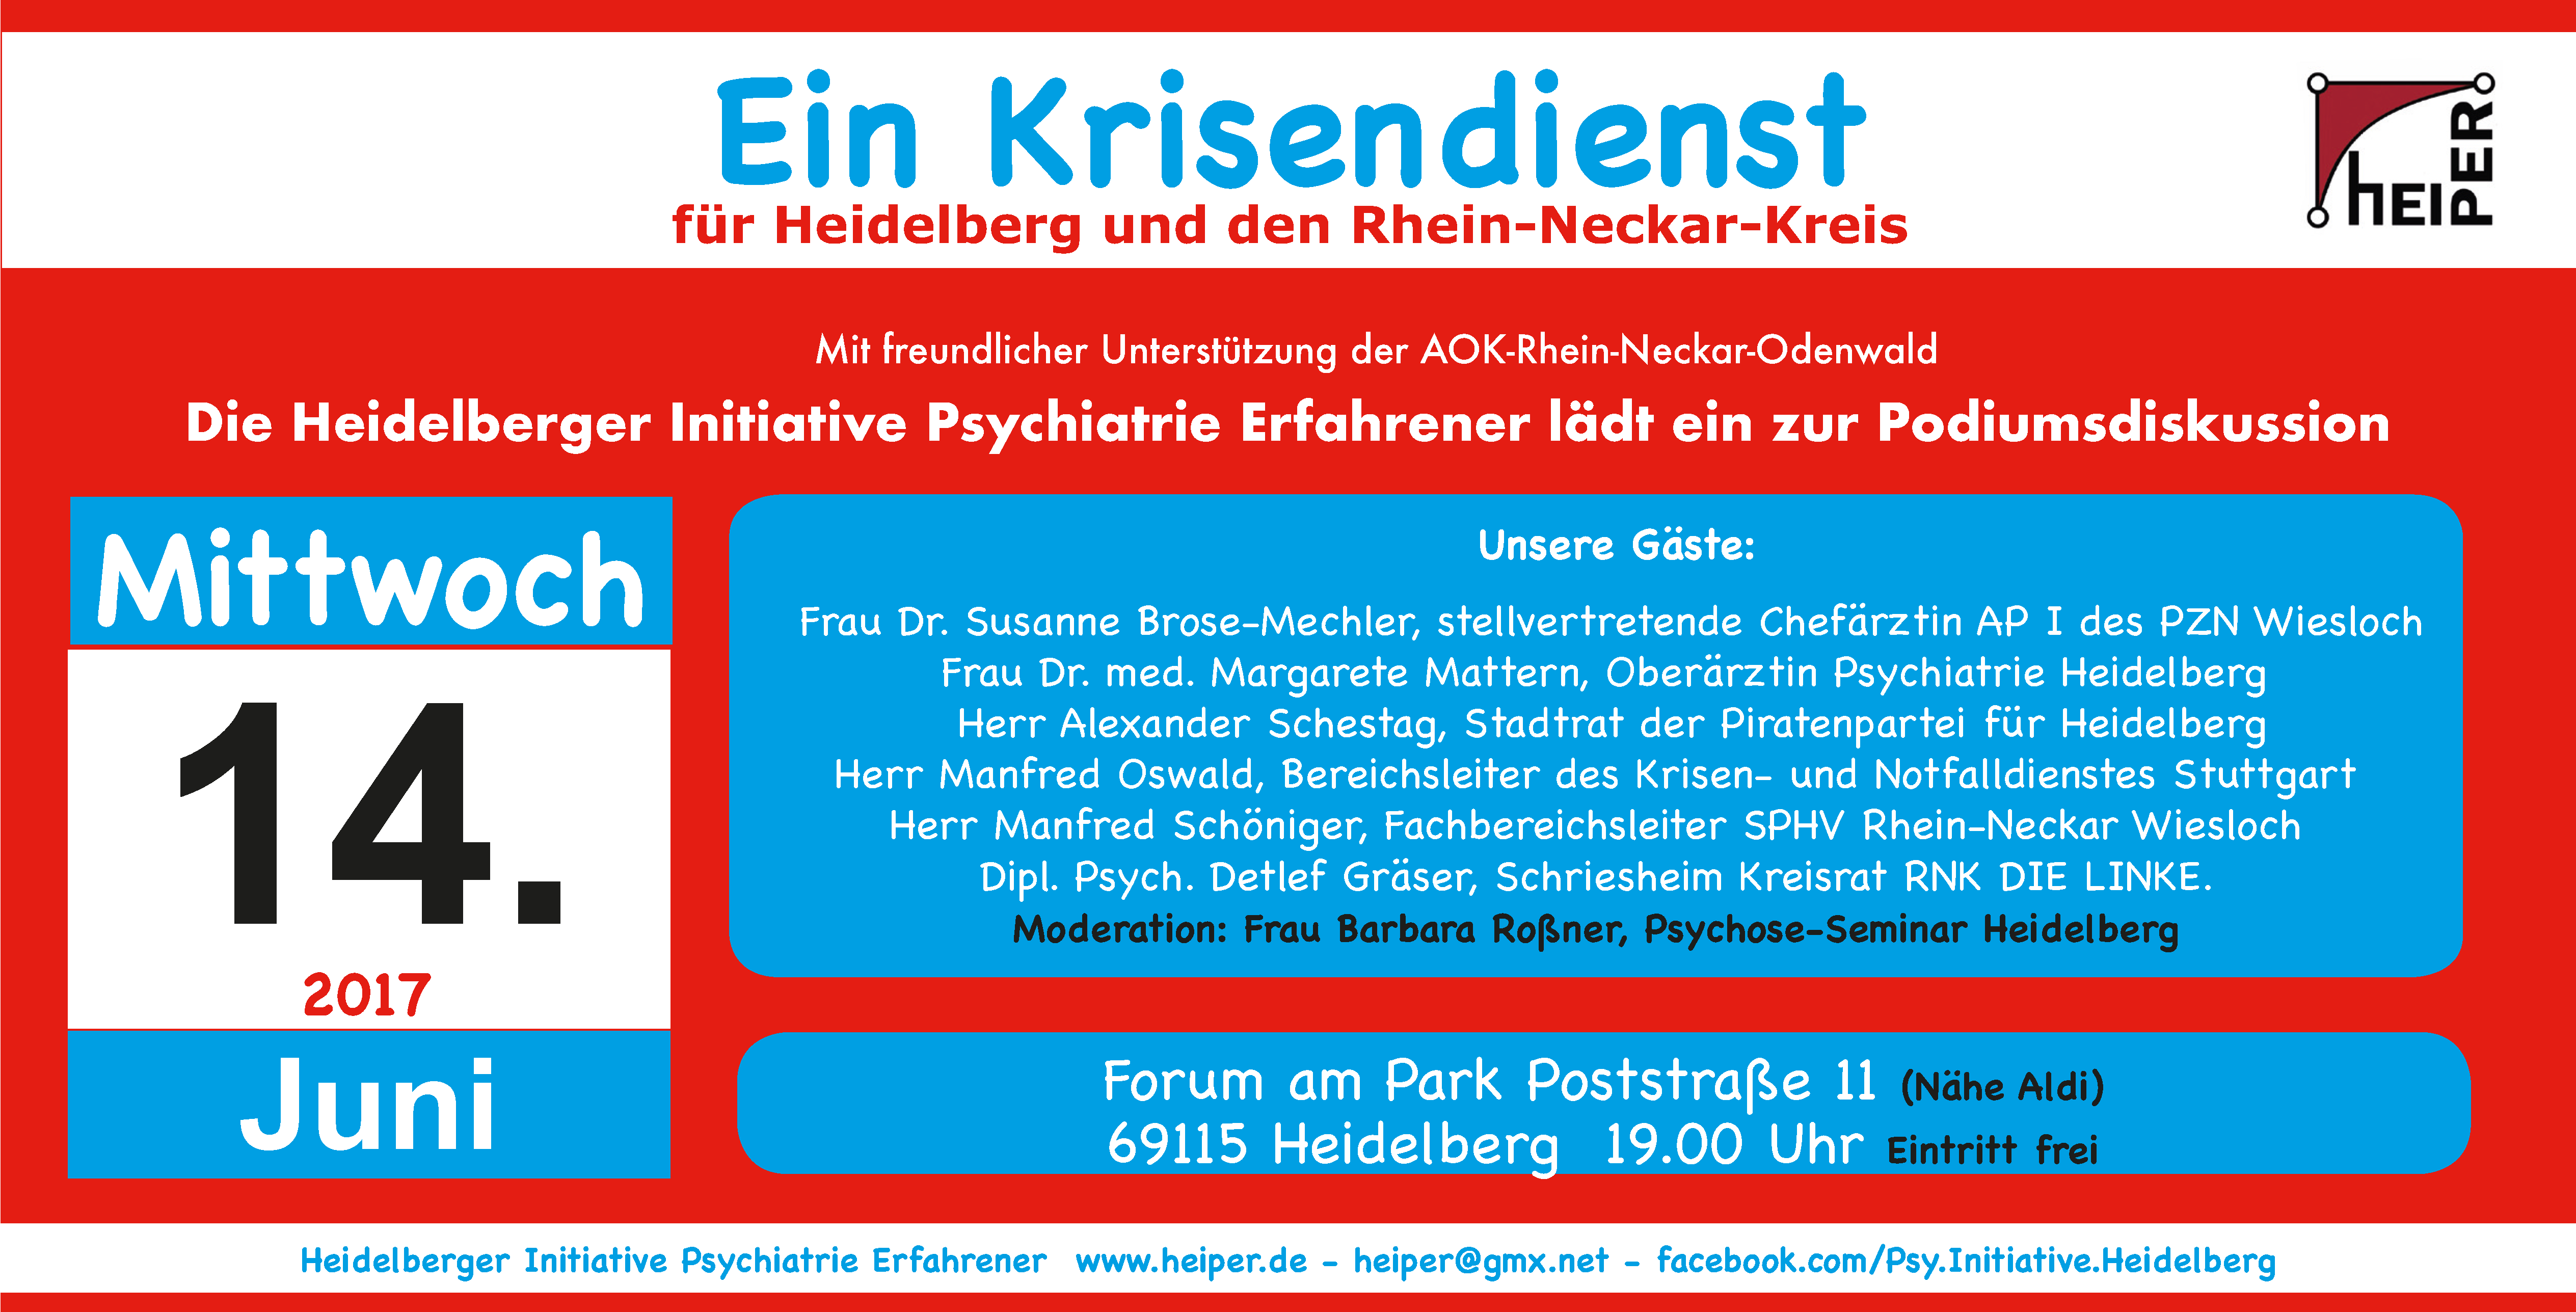 Ein Krisendienst für Heidelberg und den Rhein-Neckar-Kreis - Die Heidelberger Initiative Psychiatrie Erfahrener lädt ein zur Podiumsdiskussion am 14.06.2017